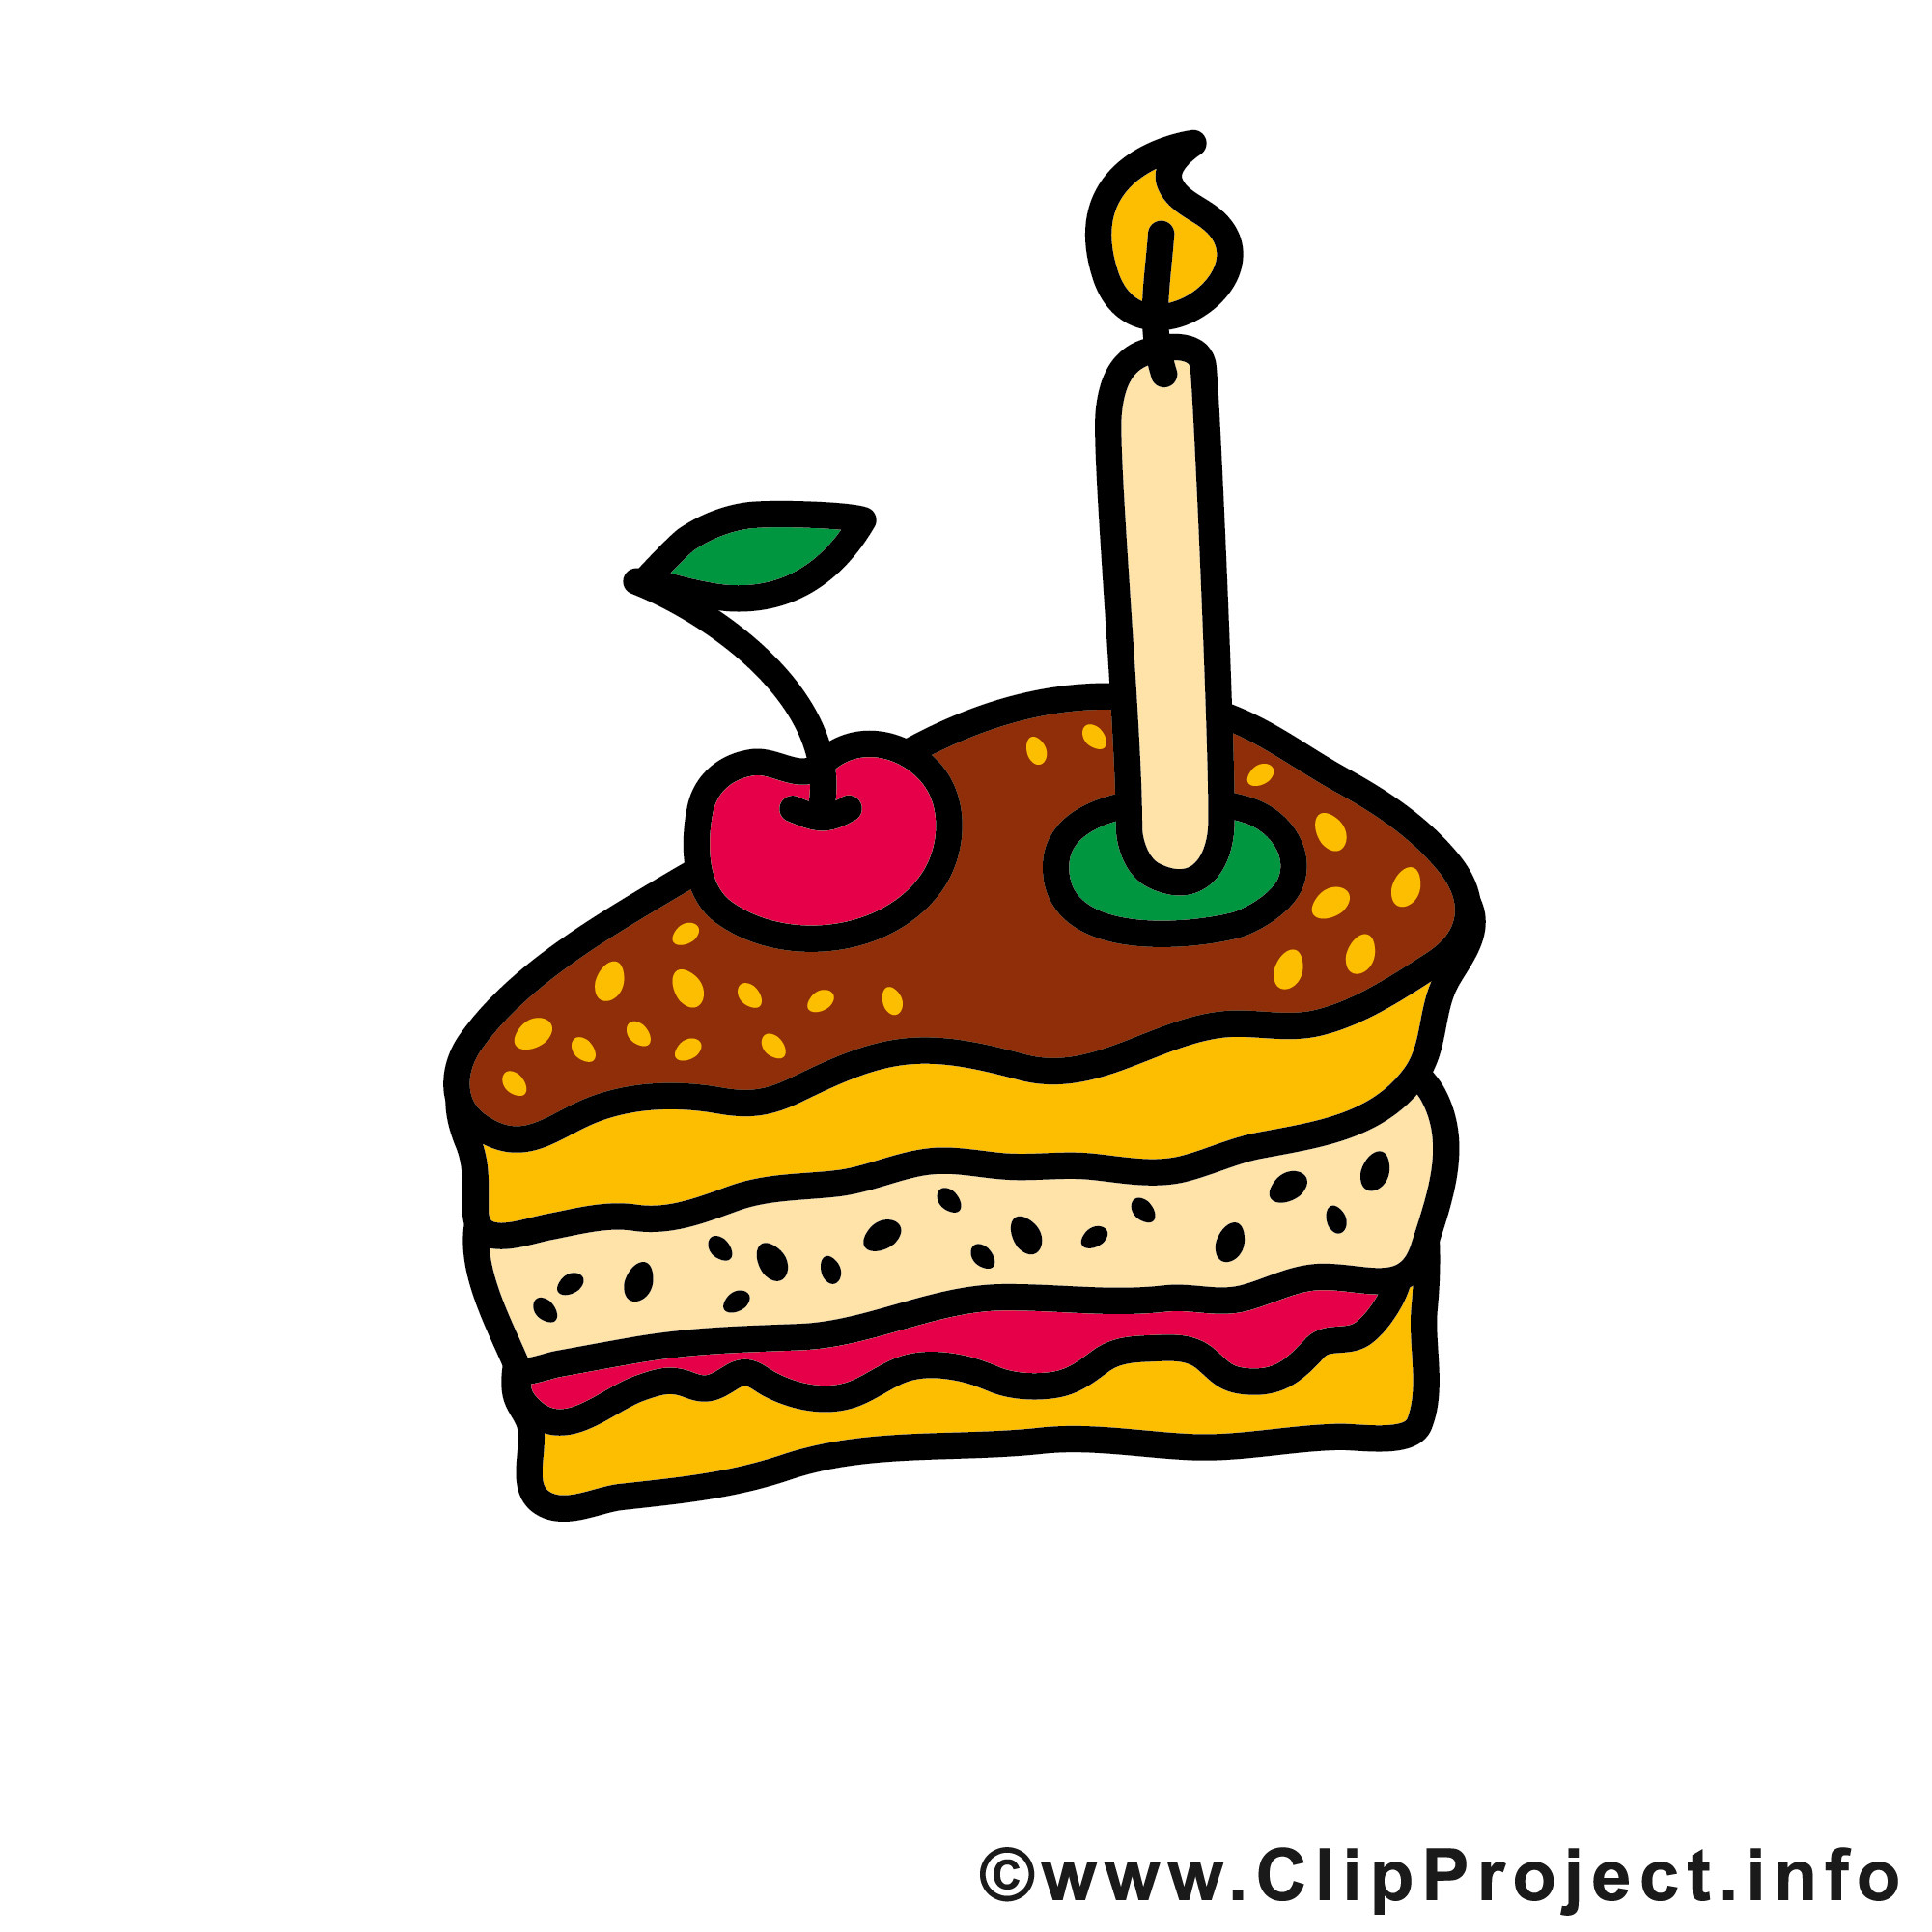 Clipart Geburtstagstorte
 Torte clipart Clipground